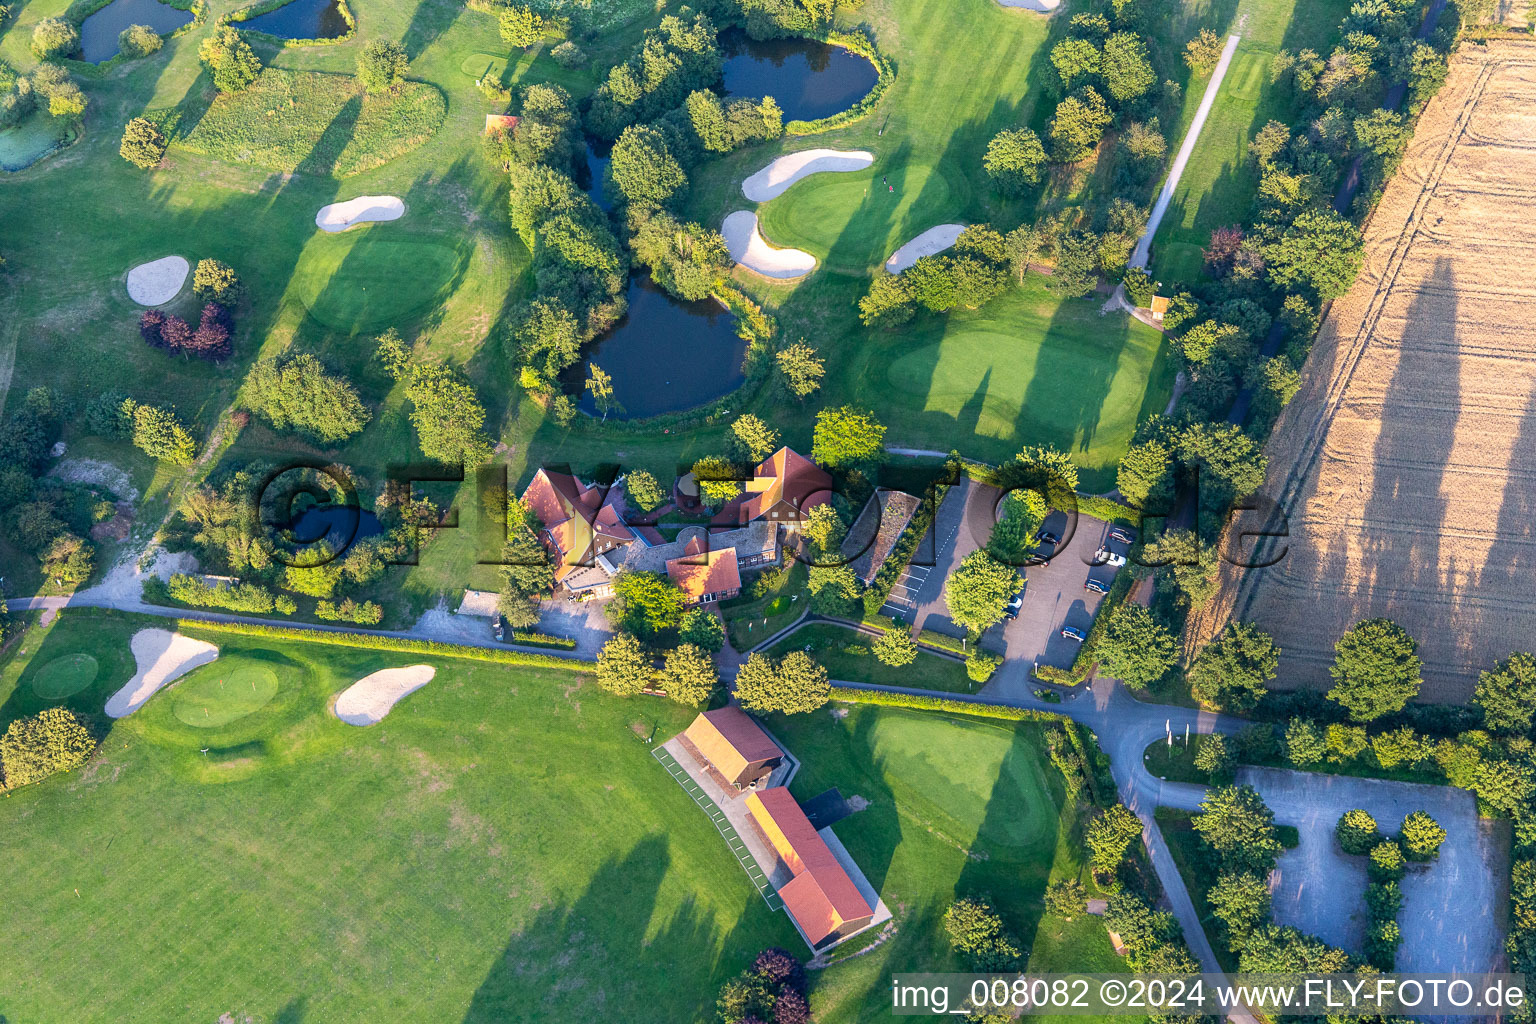 Luftbild von Gelände des Golfplatz des Golf- und Landclub Coesfeld e.V. im Ortsteil Stevede in Coesfeld im Bundesland Nordrhein-Westfalen, Deutschland